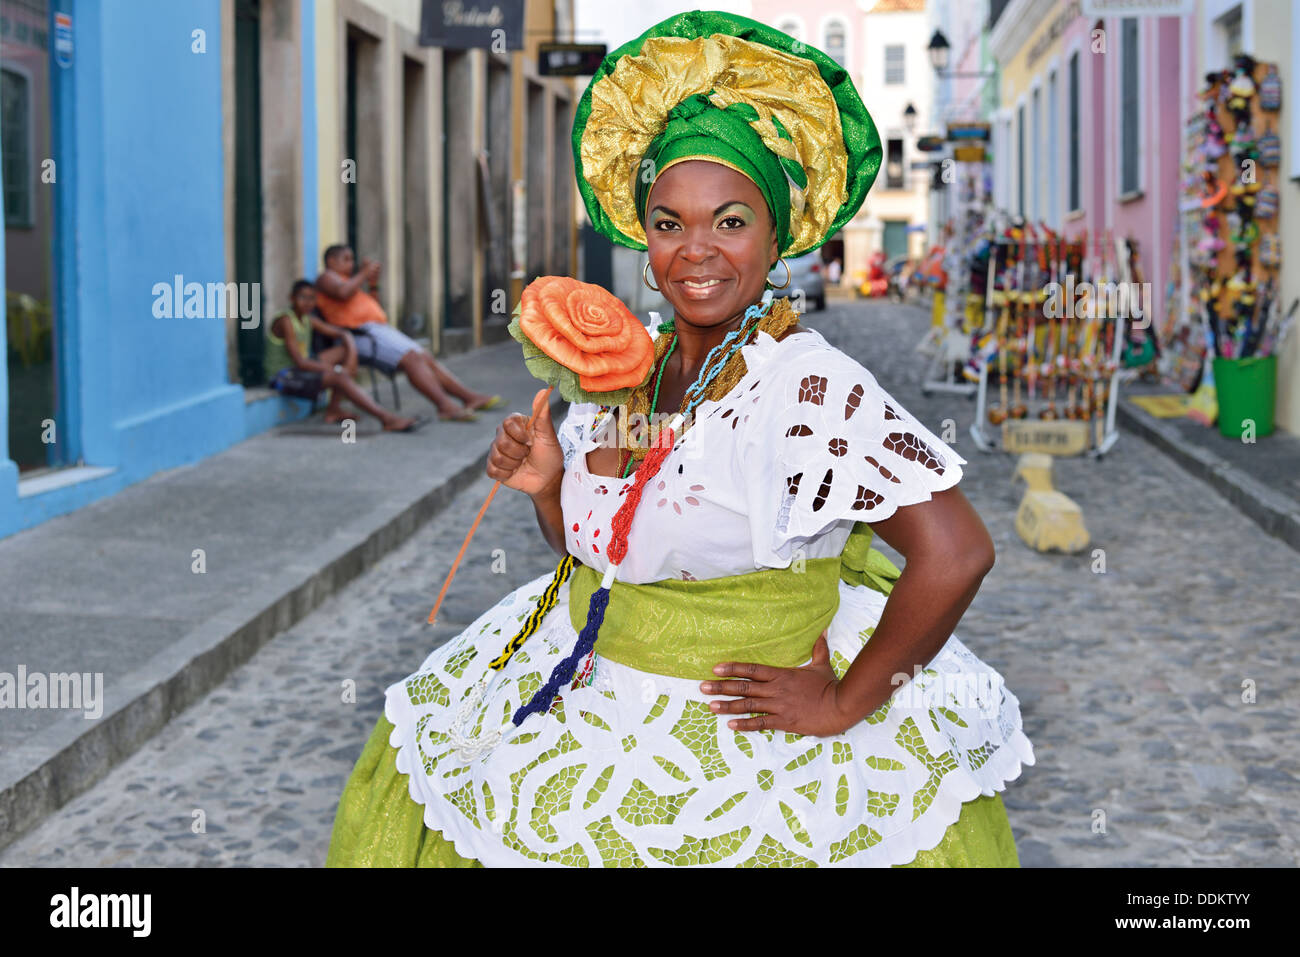 Brazil, Bahia: 'Baiana' Ana Cristina posing for a picture in the Rua Joao de Deus in the historic center of Salvador da Bahia Stock Photo